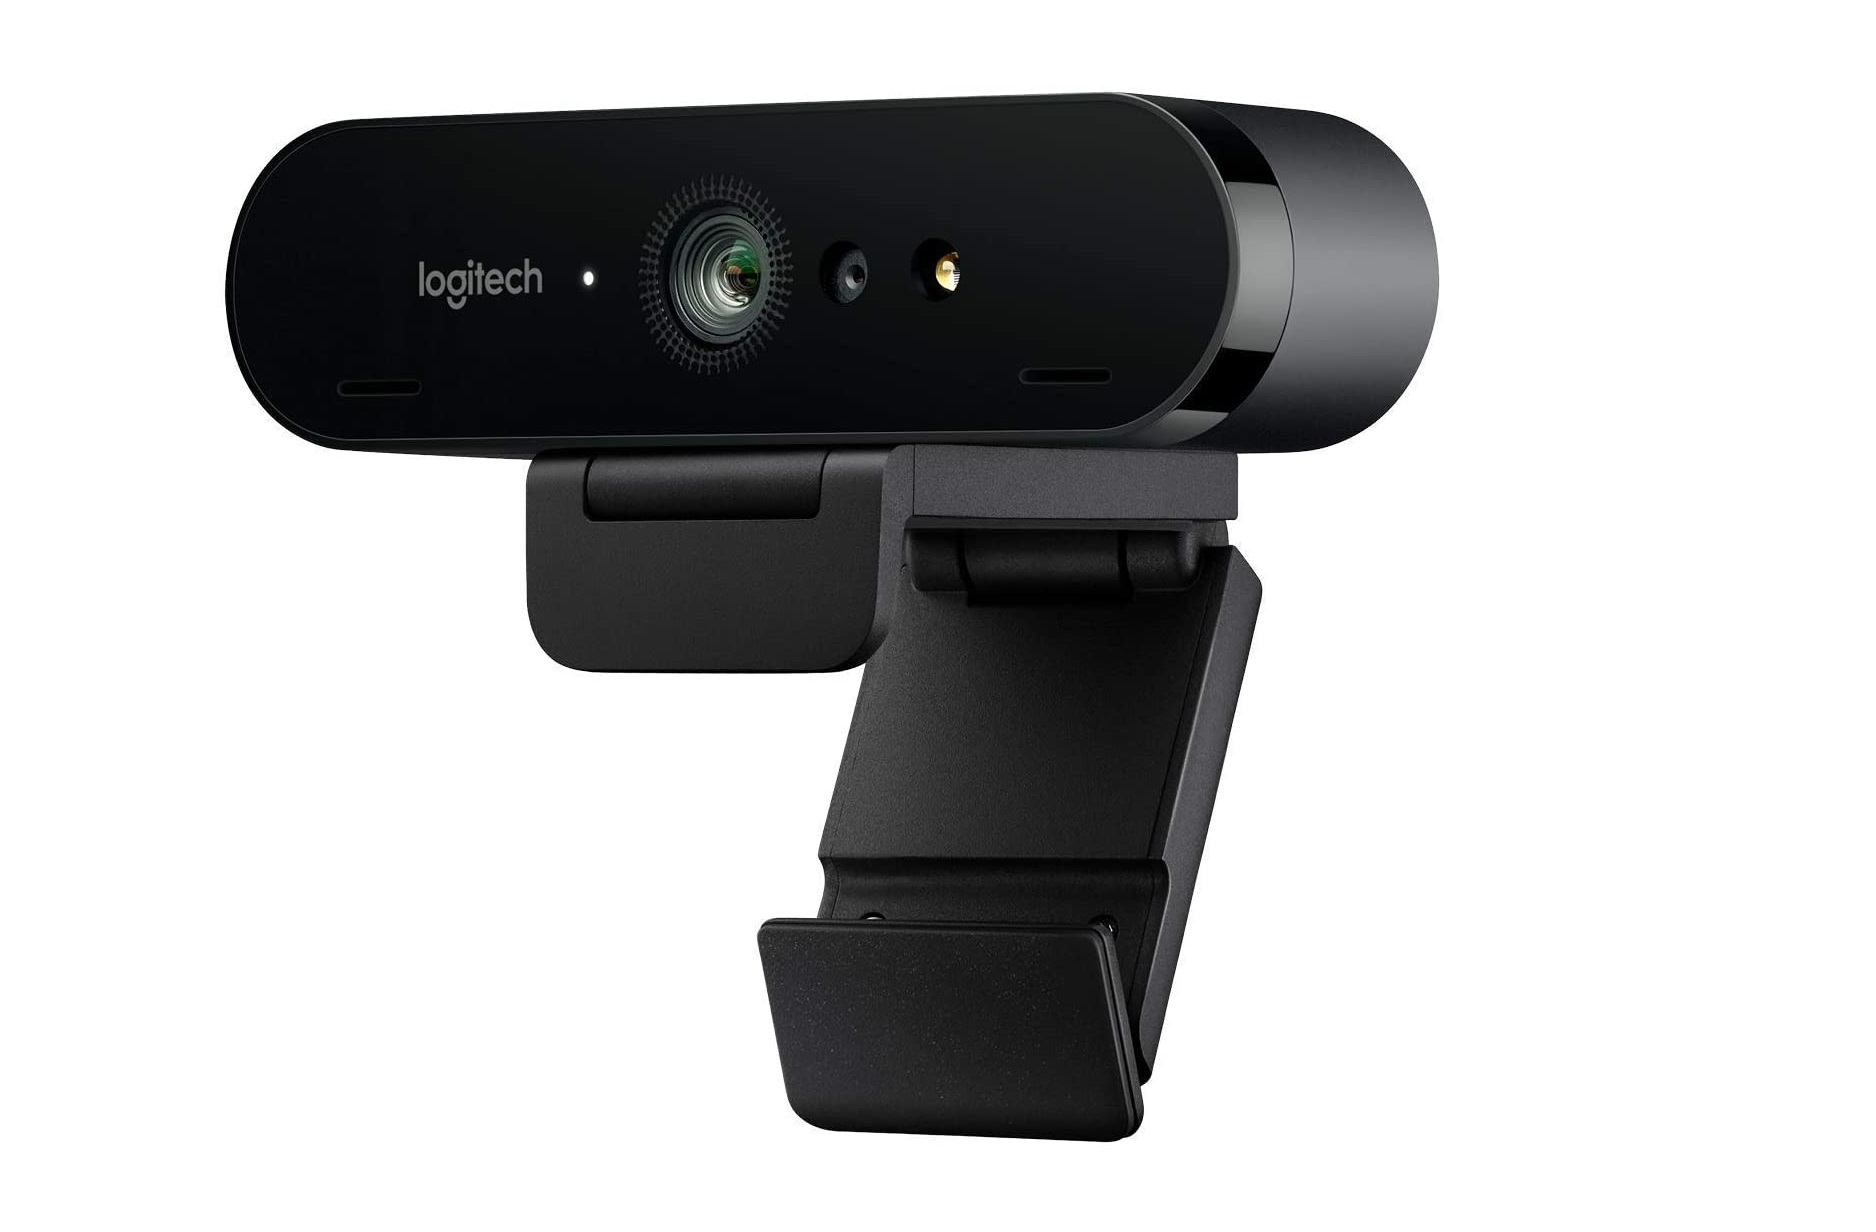  Best webcams for Zoom meetings